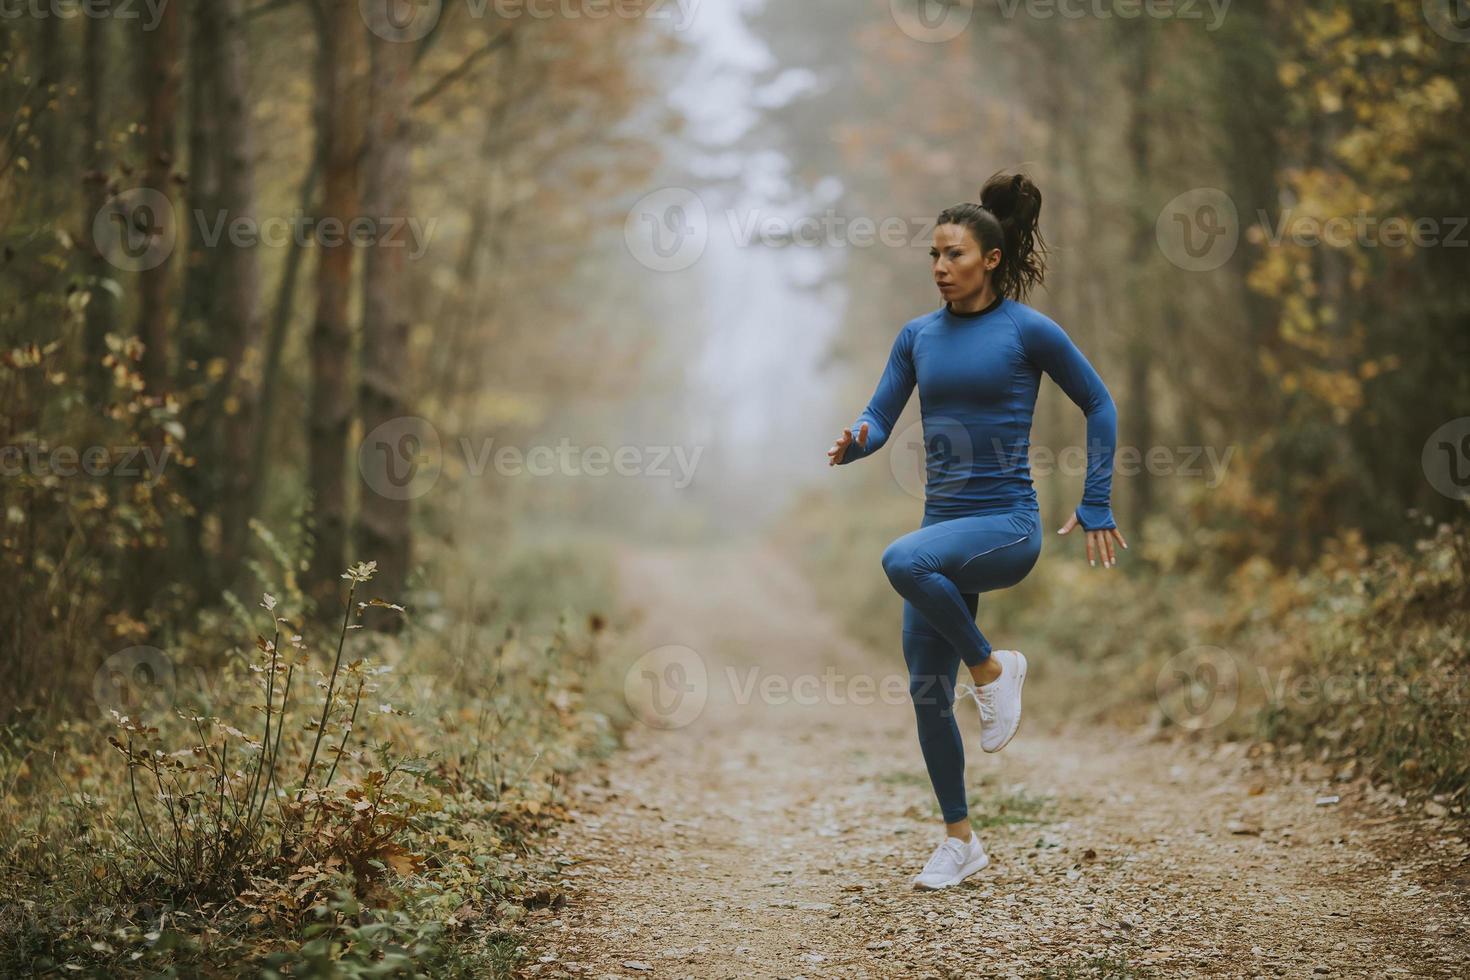 jovem correndo fazendo exercícios na trilha da floresta no outono foto